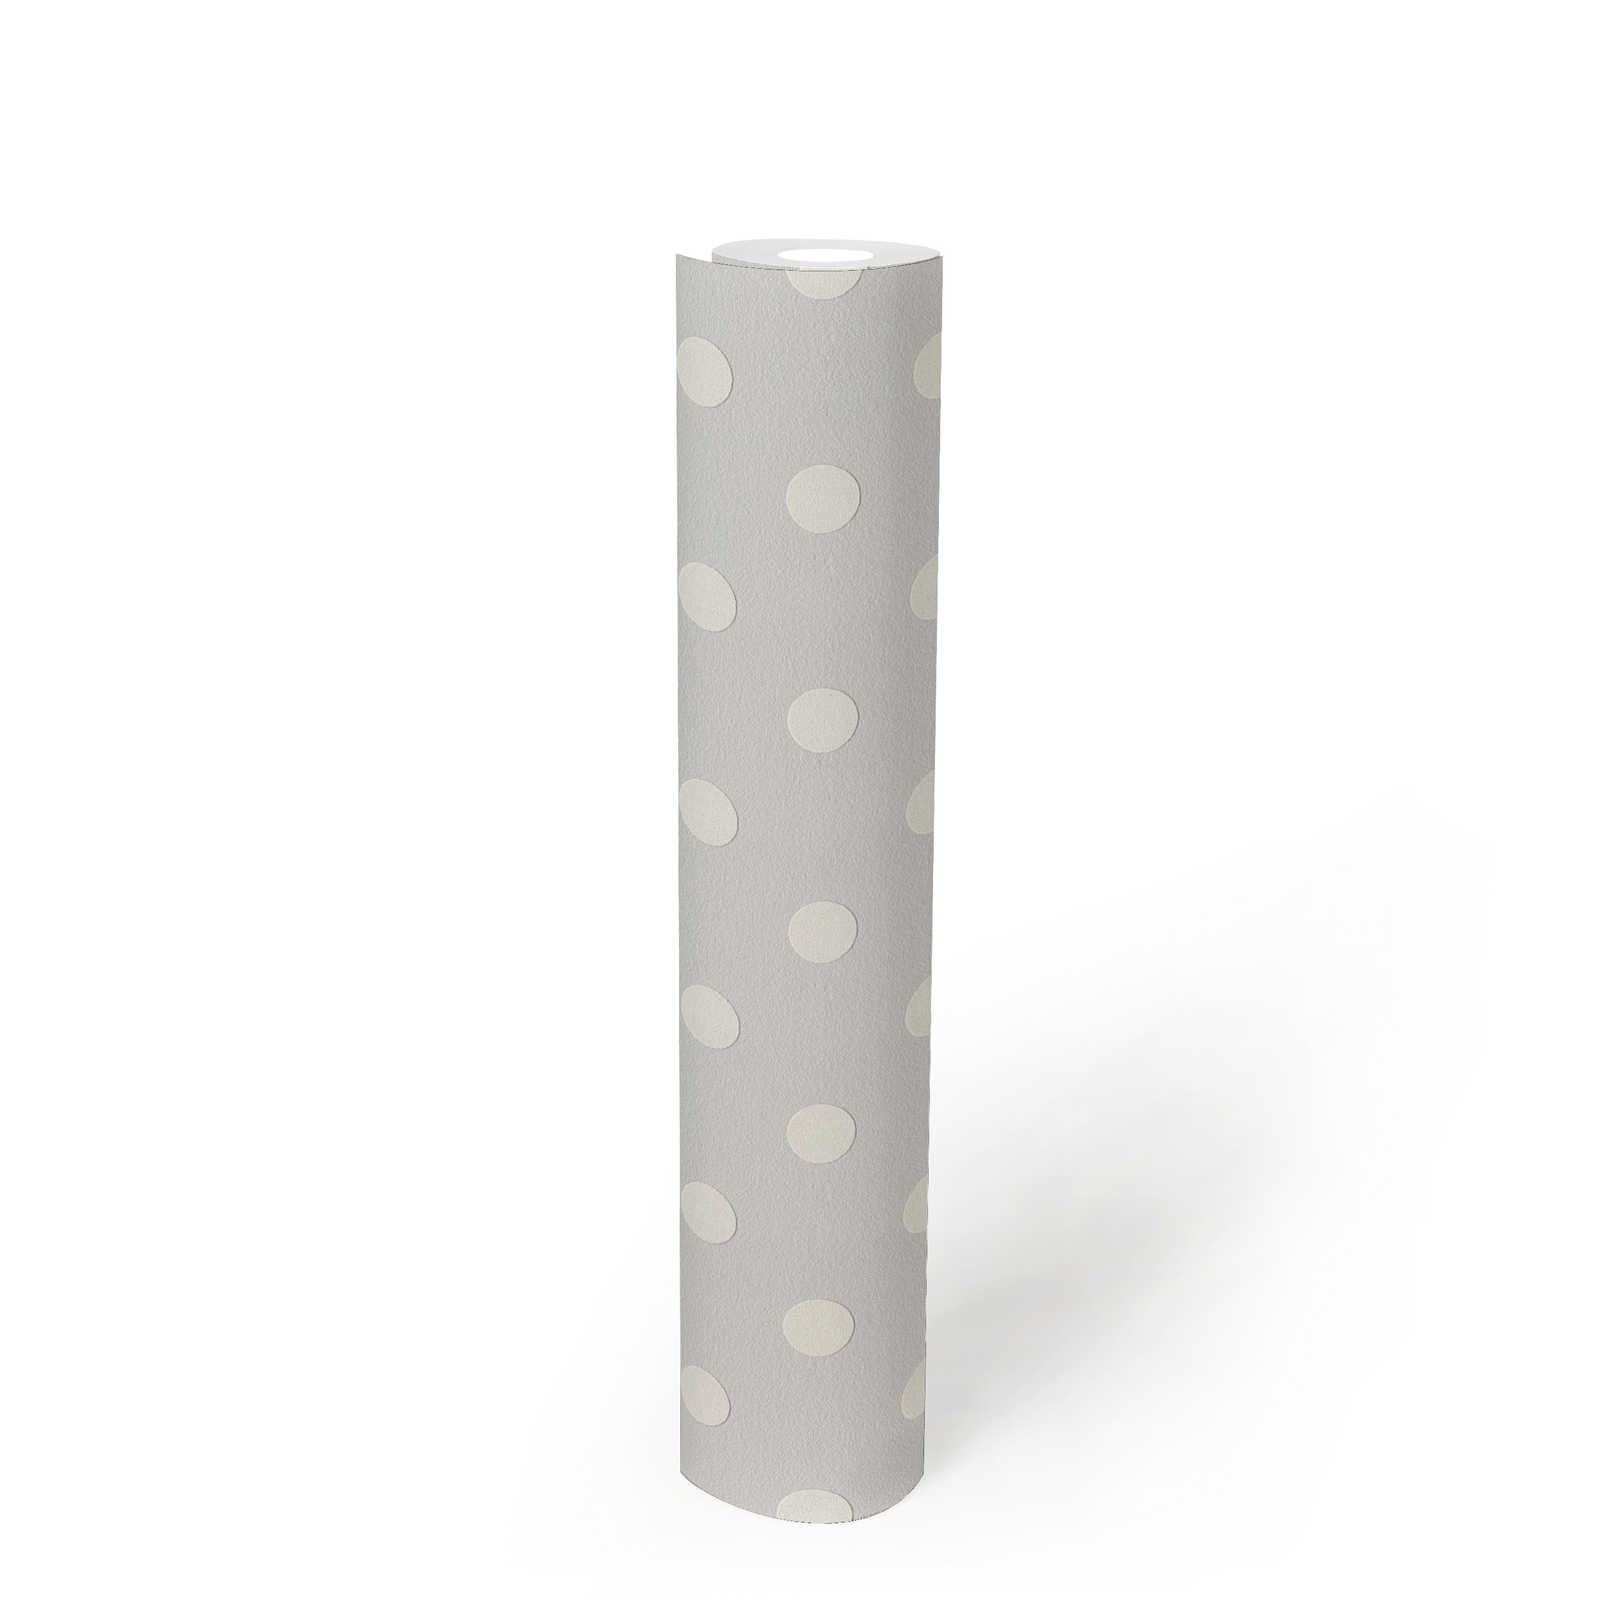             Polka dots design behang - grijs, wit
        